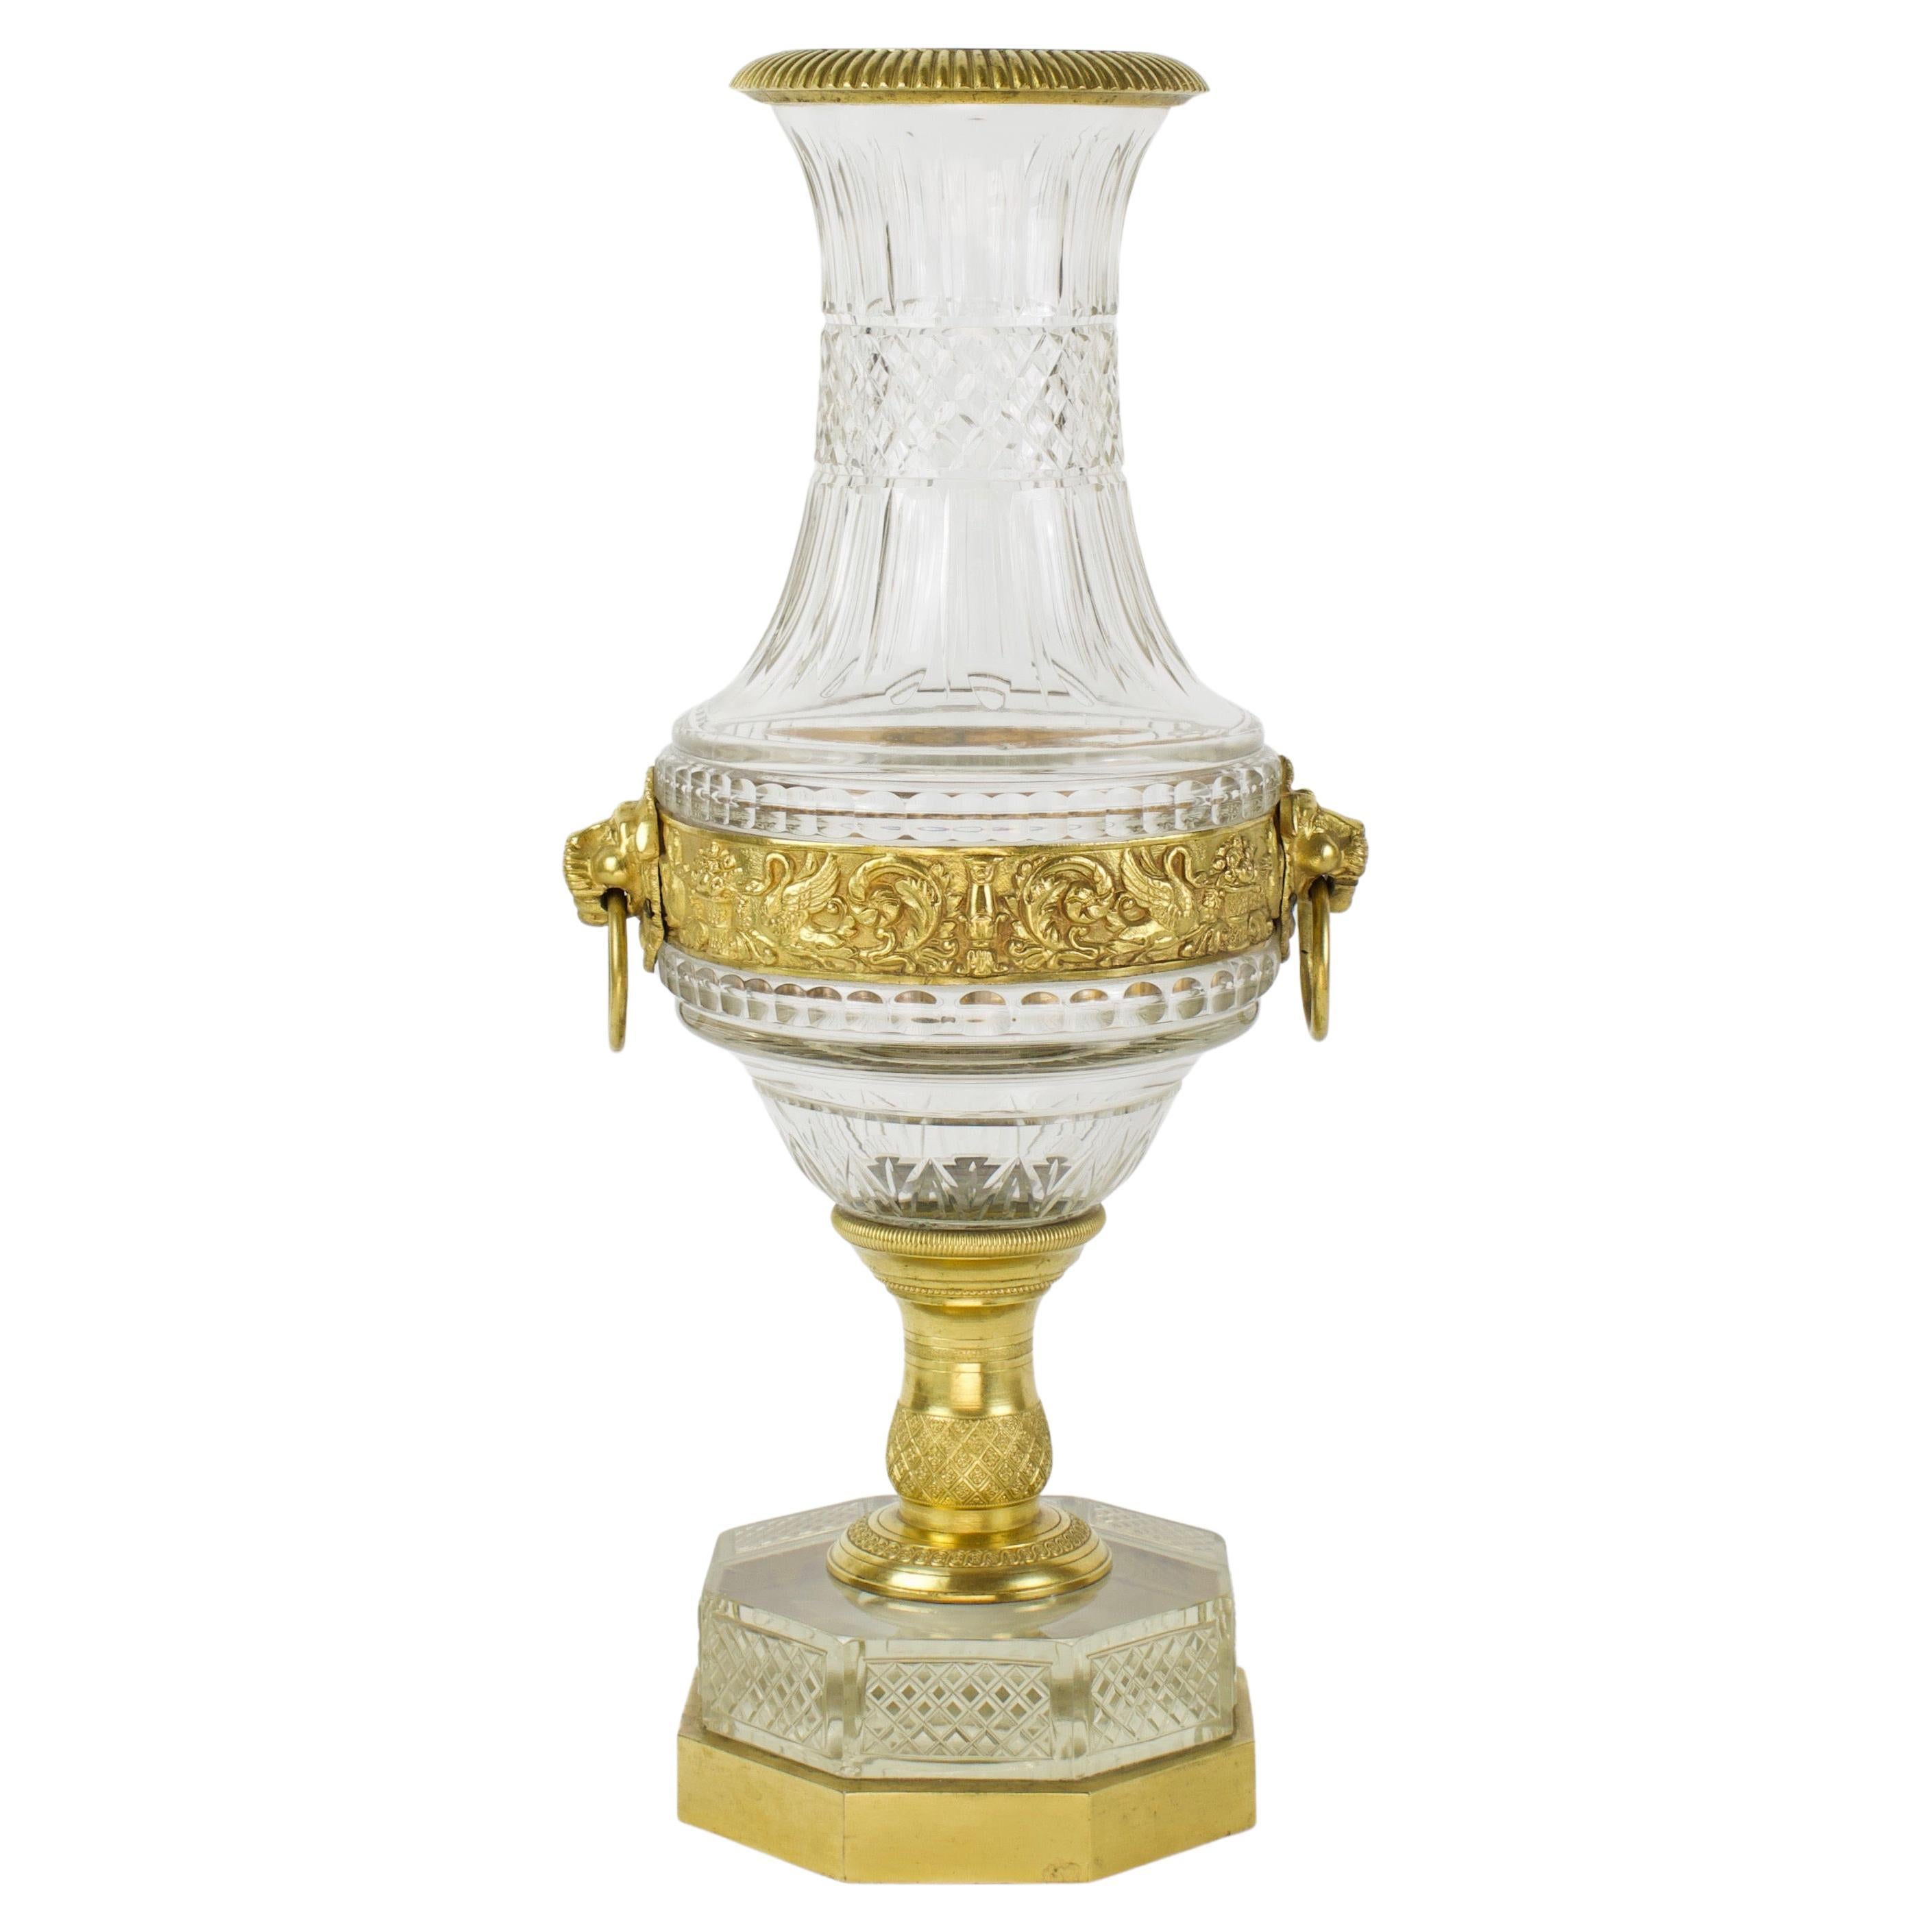 Vase français à têtes de lion en cristal et bronze doré de la fin de l'Empire de la fin du XIXe siècle